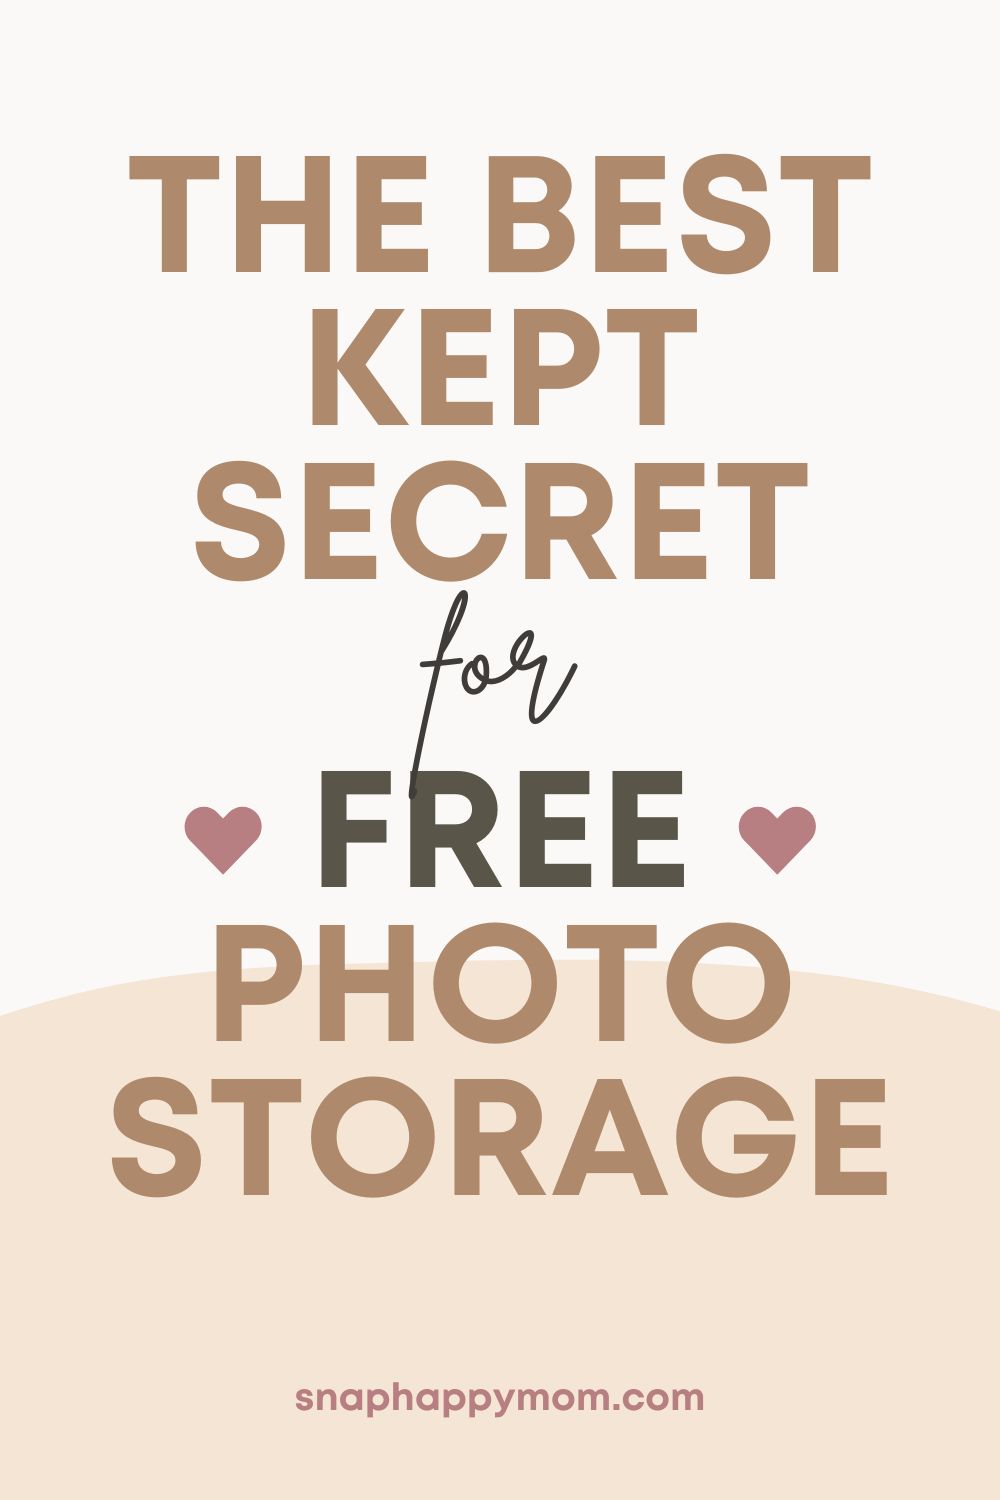 Amazon Photo Storage è davvero gratuito?